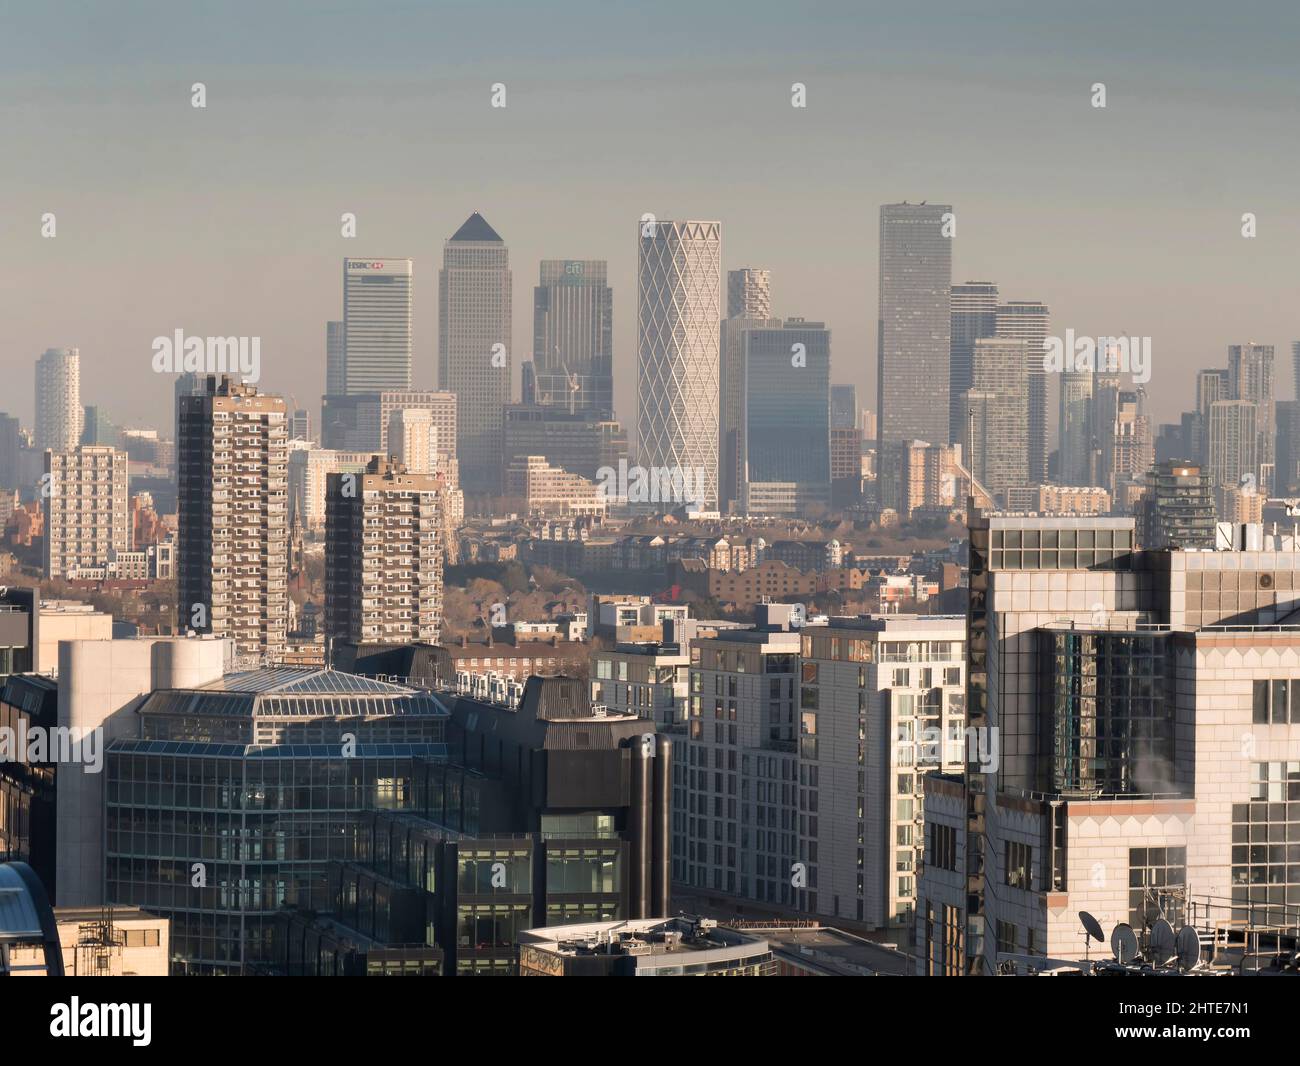 UK, England, London, Canary Wharf from City Stock Photo